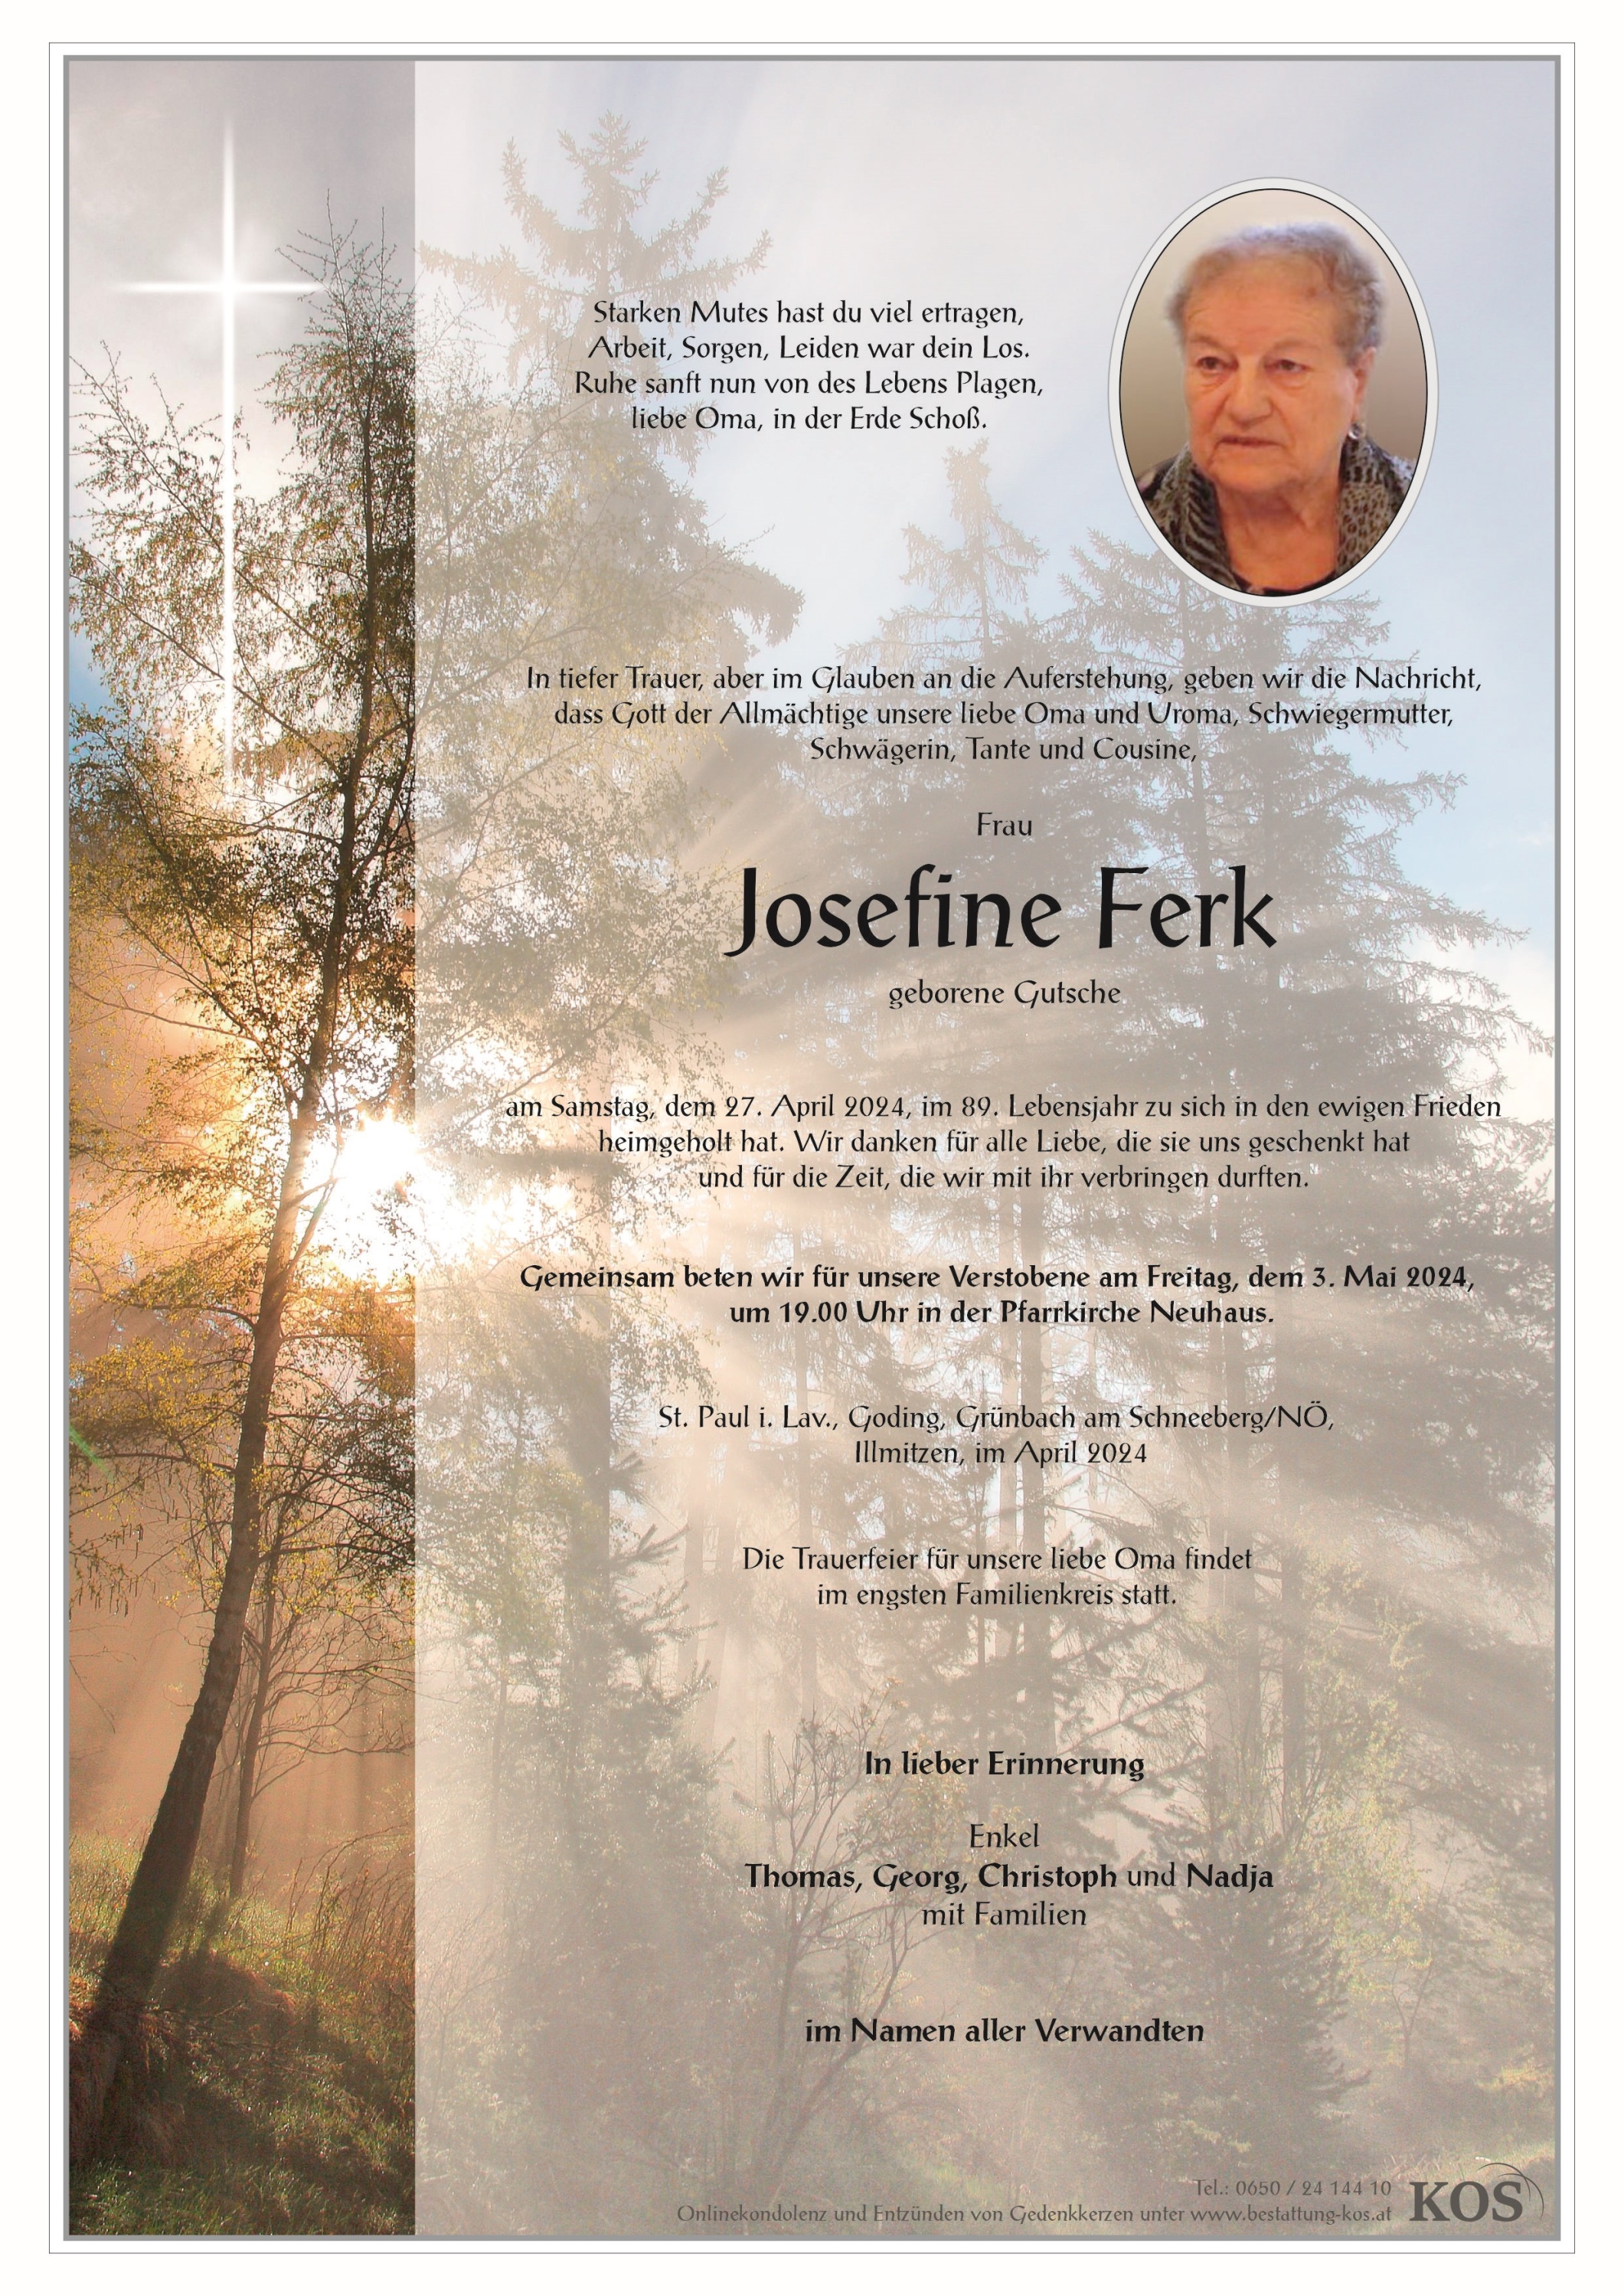 Josefine Ferk